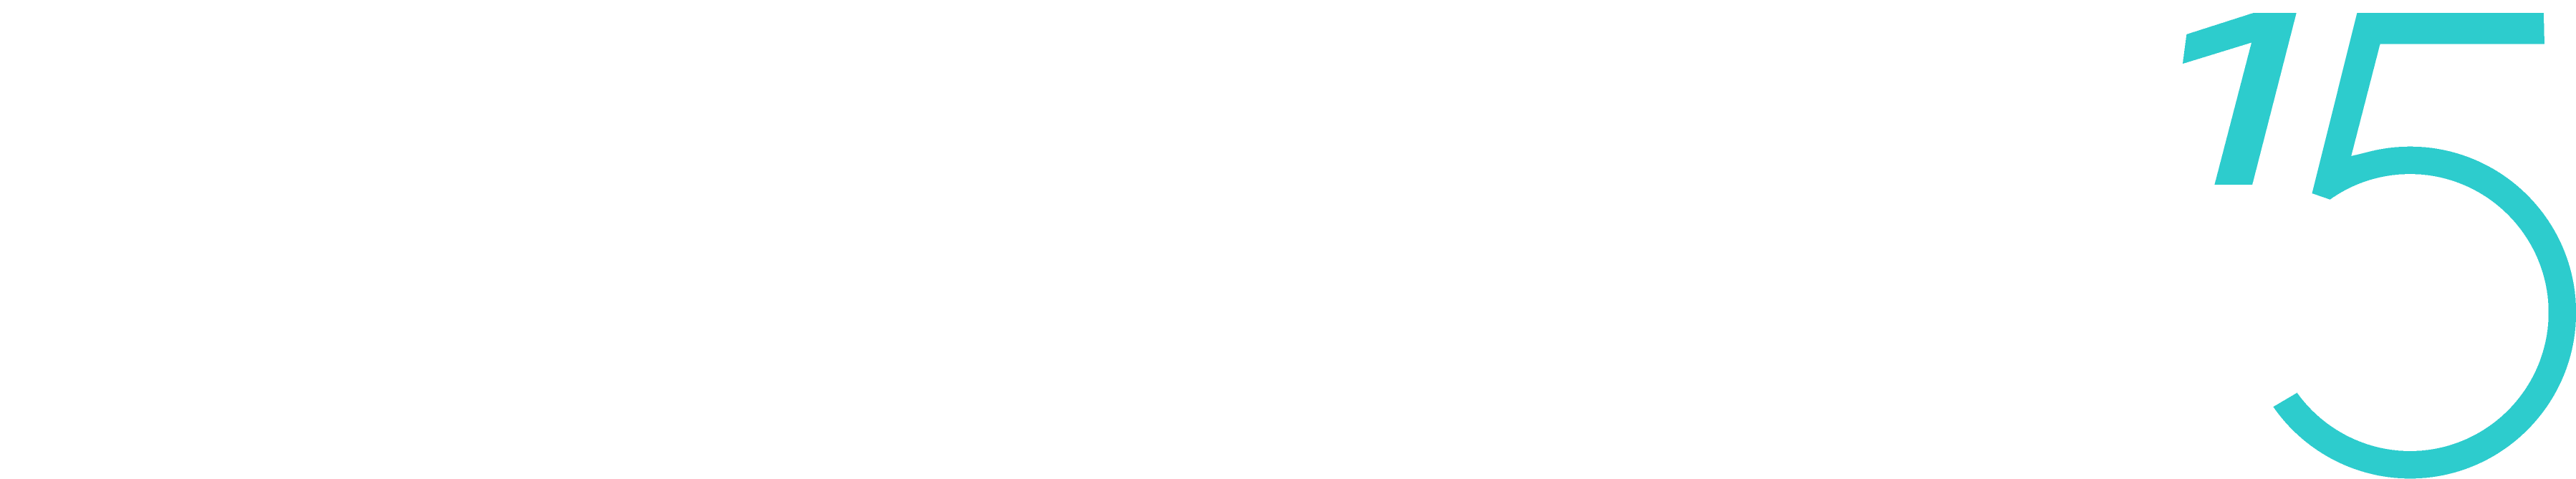 Fundación BBVA - MicroFinanzas